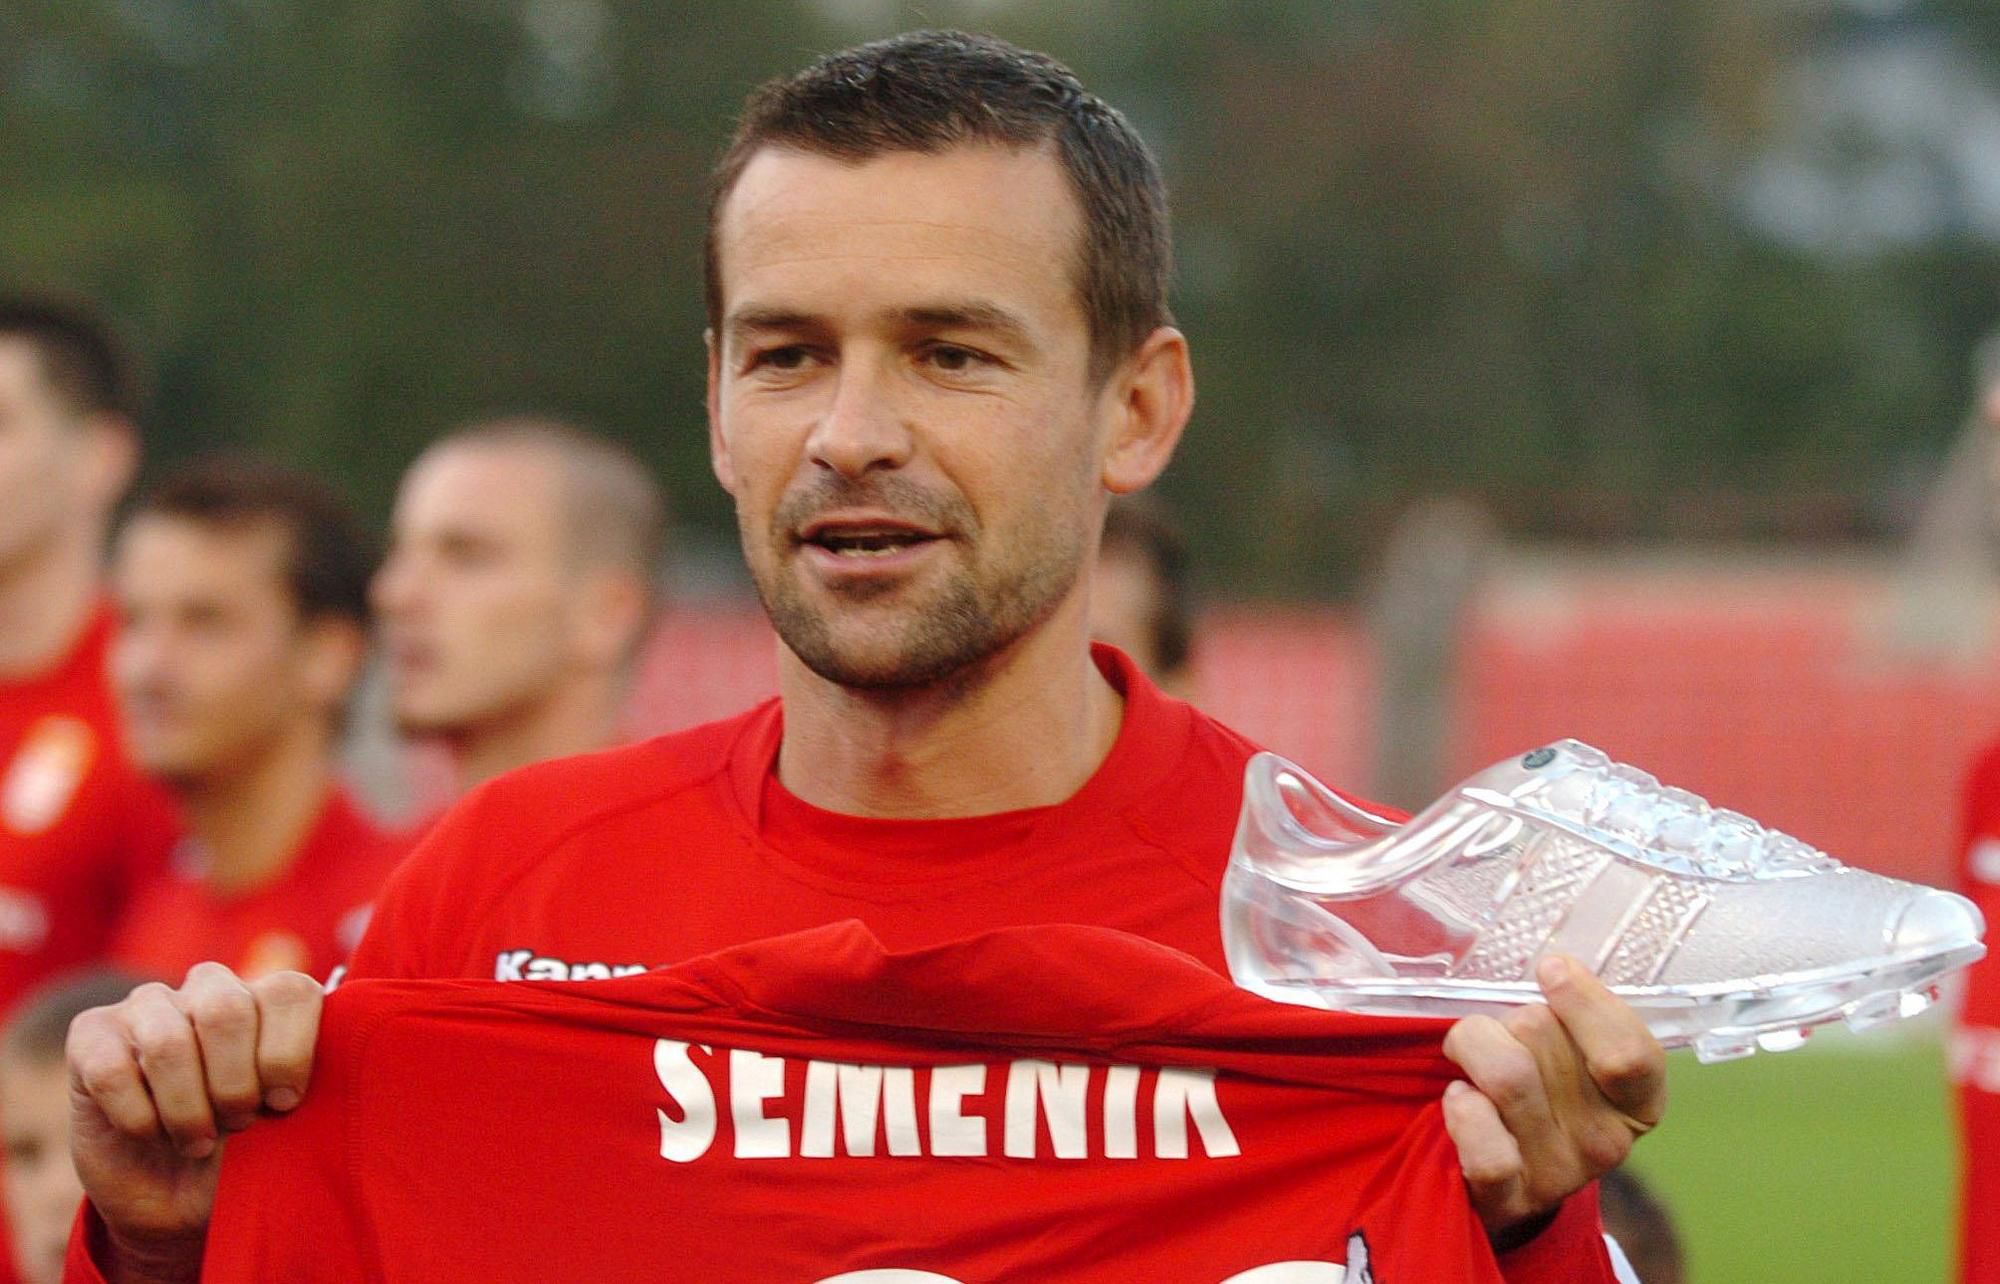 Semeník preberá krištáľovú kopačku za 100 strelených gólov v slovenskej lige (2005)